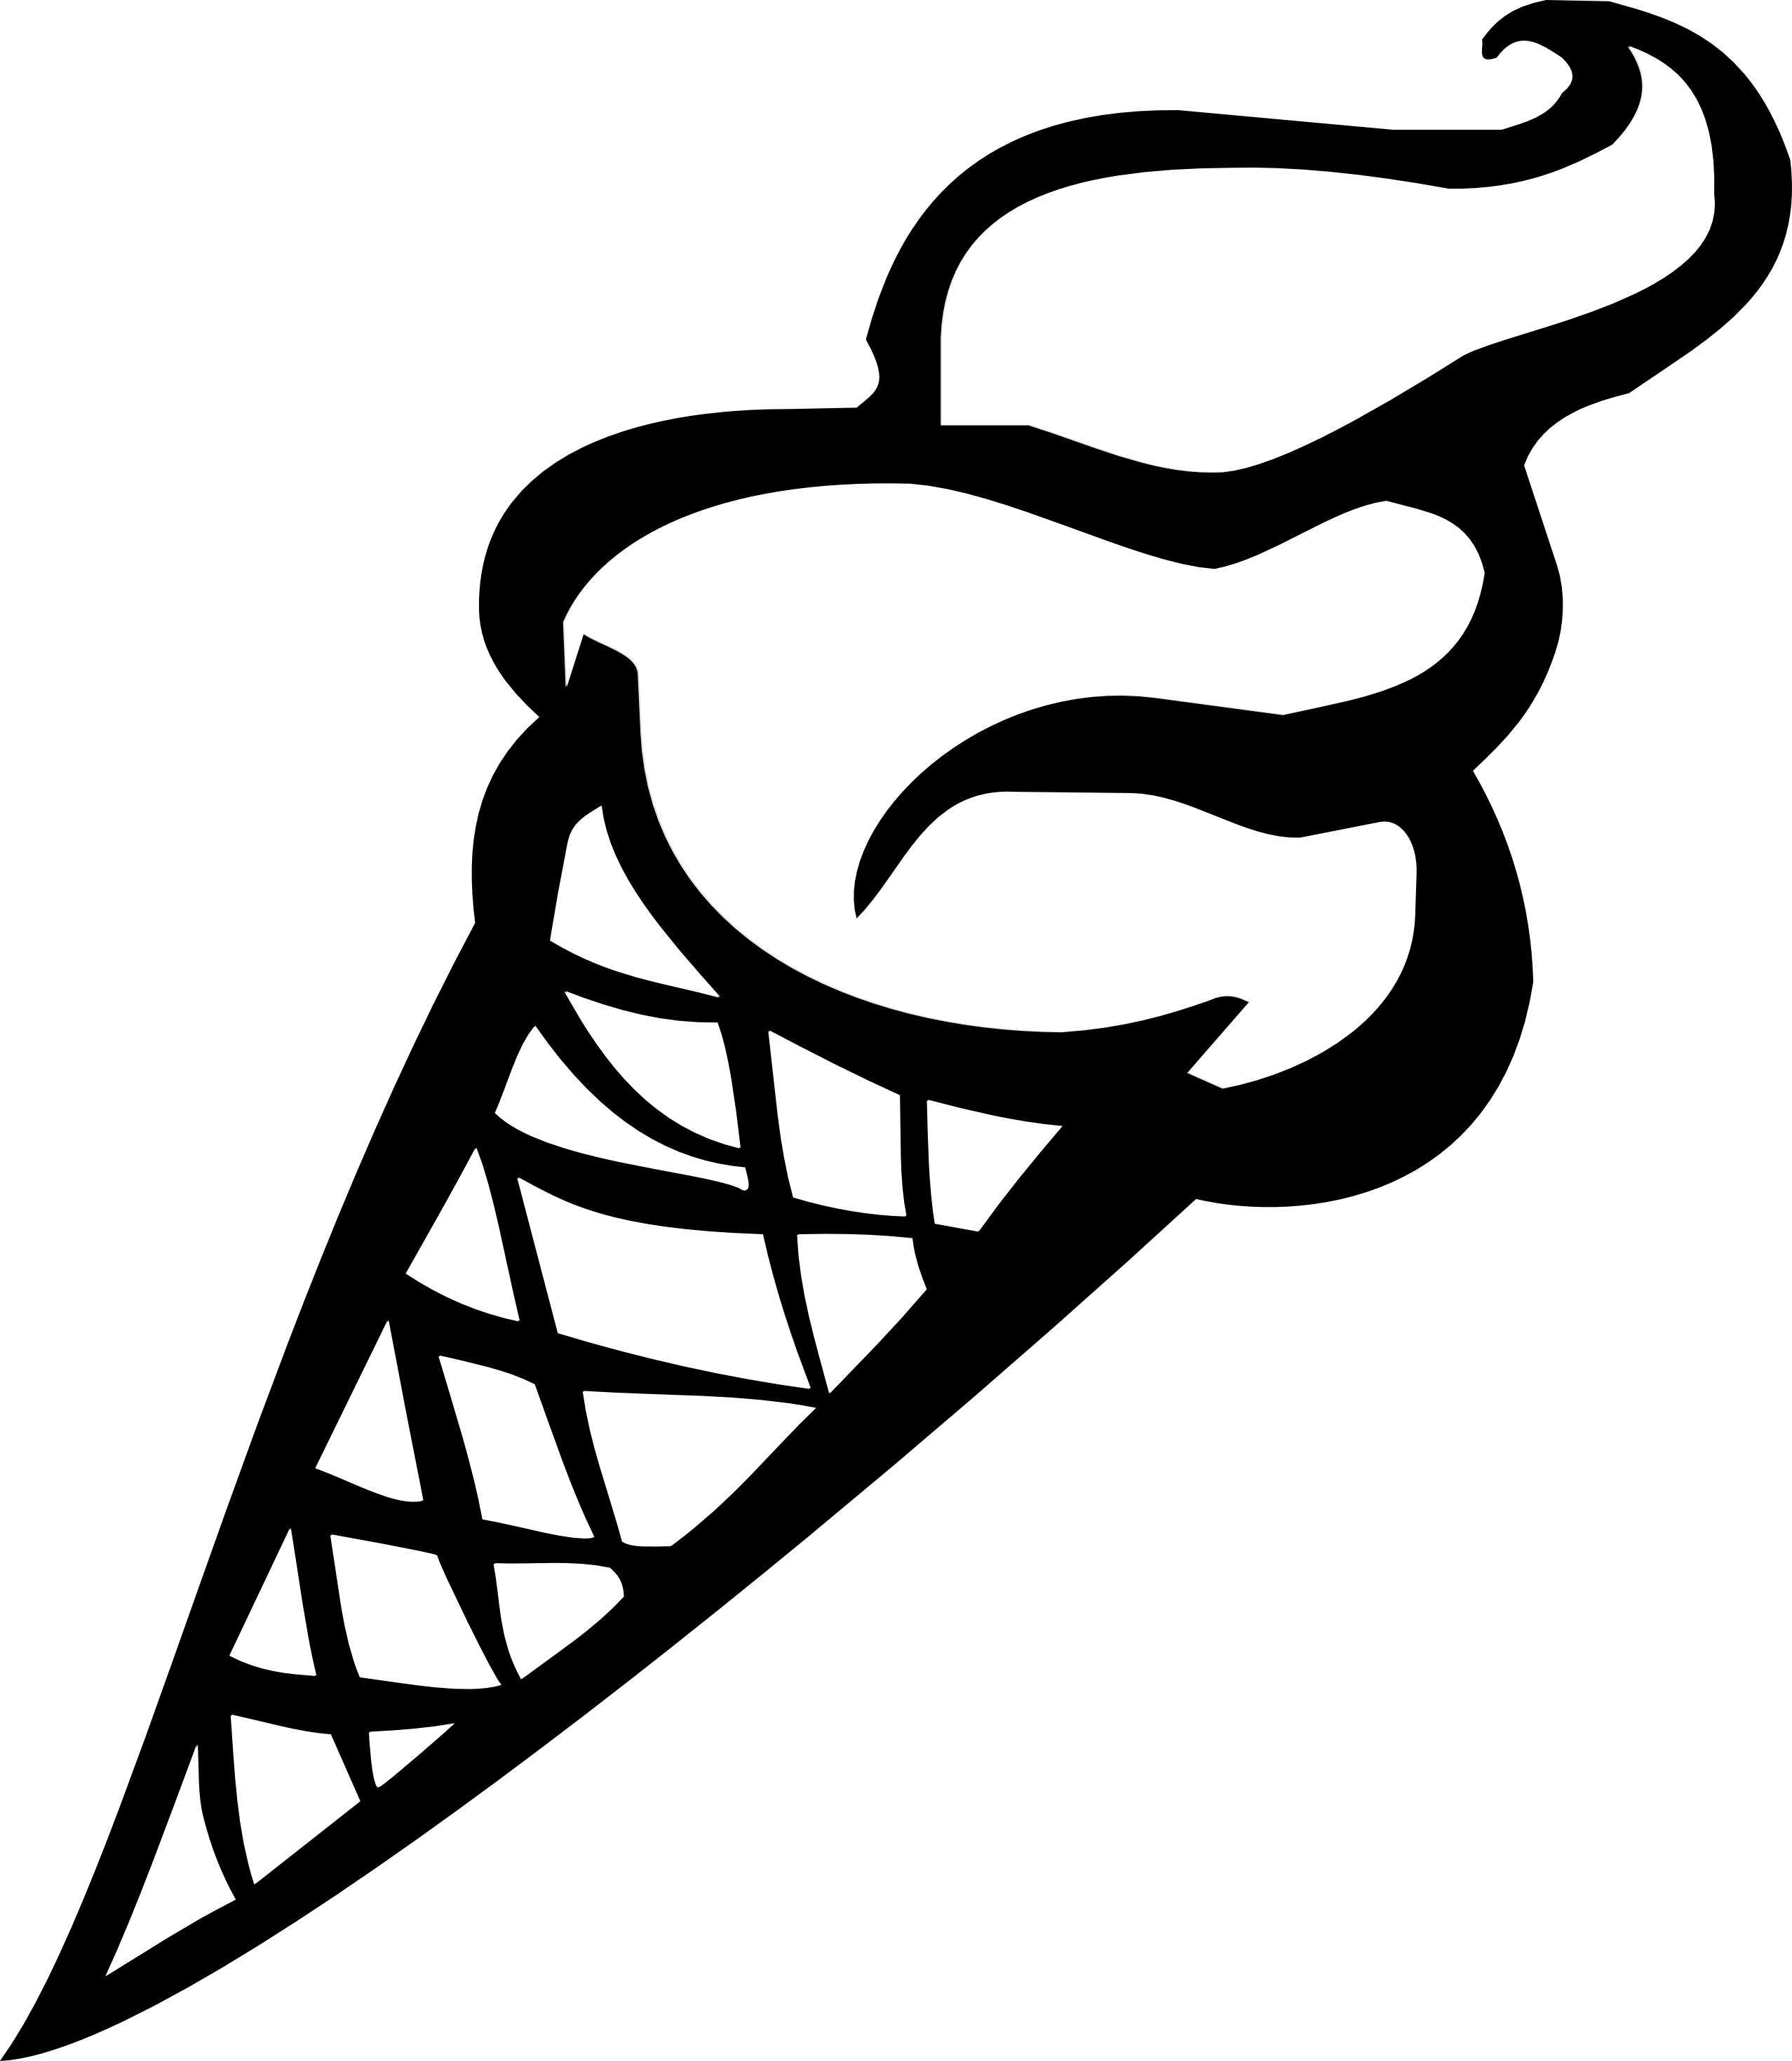 Black And White Ice Cream Cone Clipart